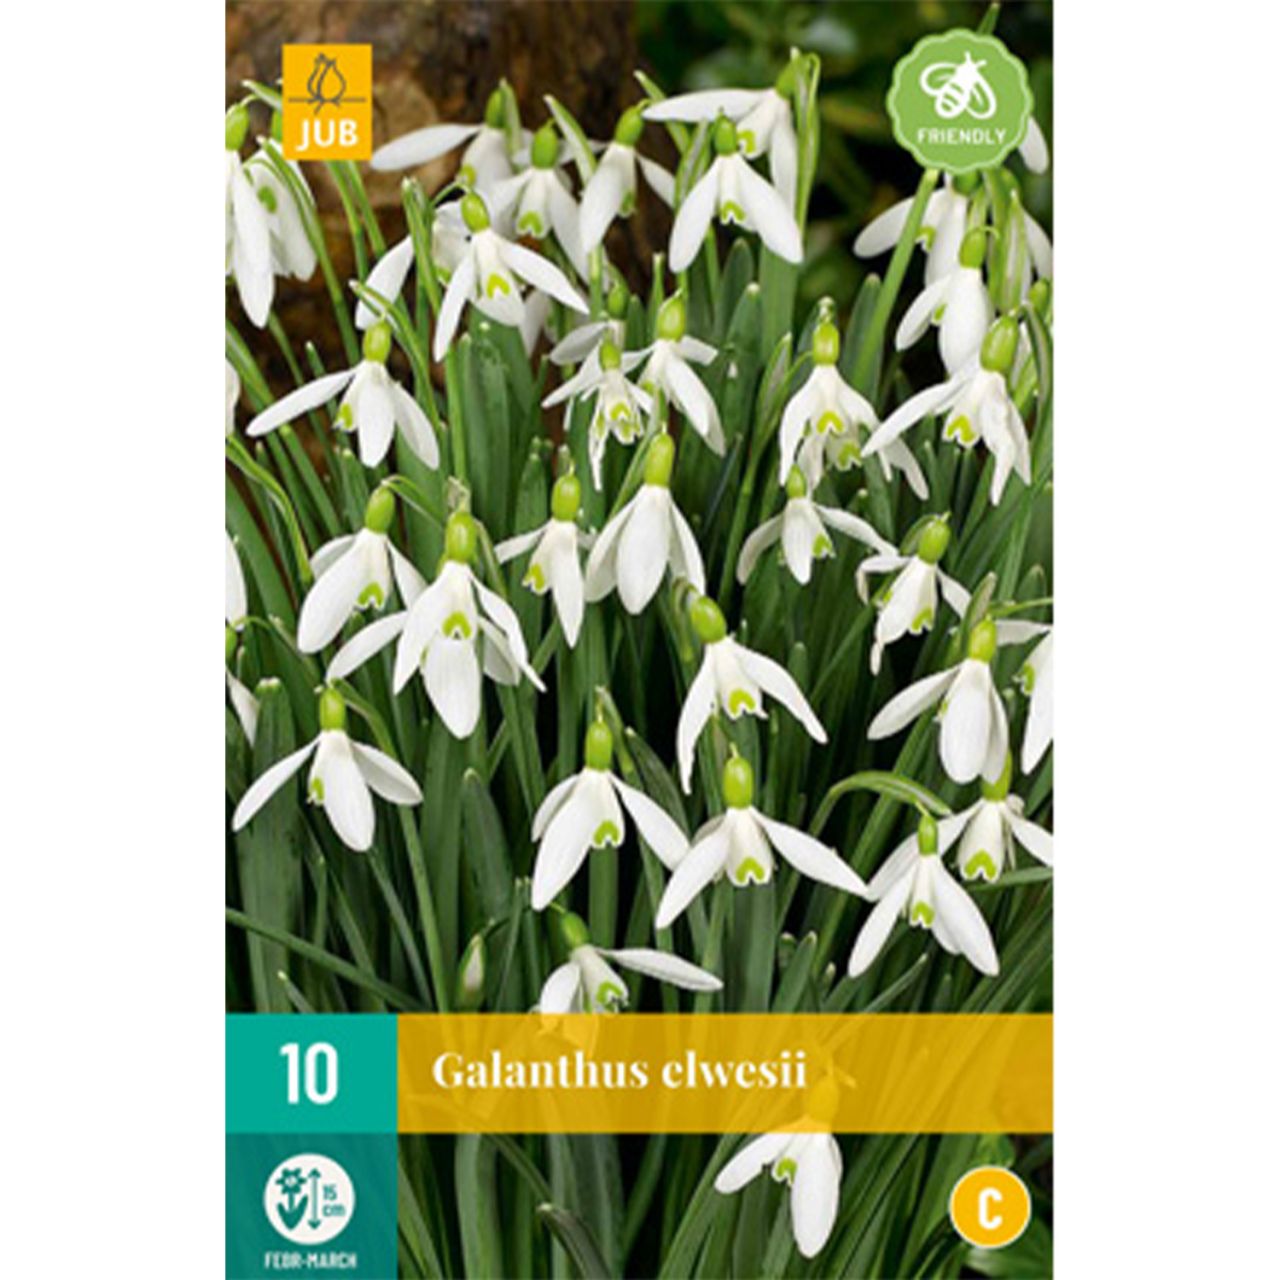 Kategorie <b>Herbst-Blumenzwiebeln </b> - Großblumige-Schneeglöckchen - 10 Stück - Galanthus elwesii